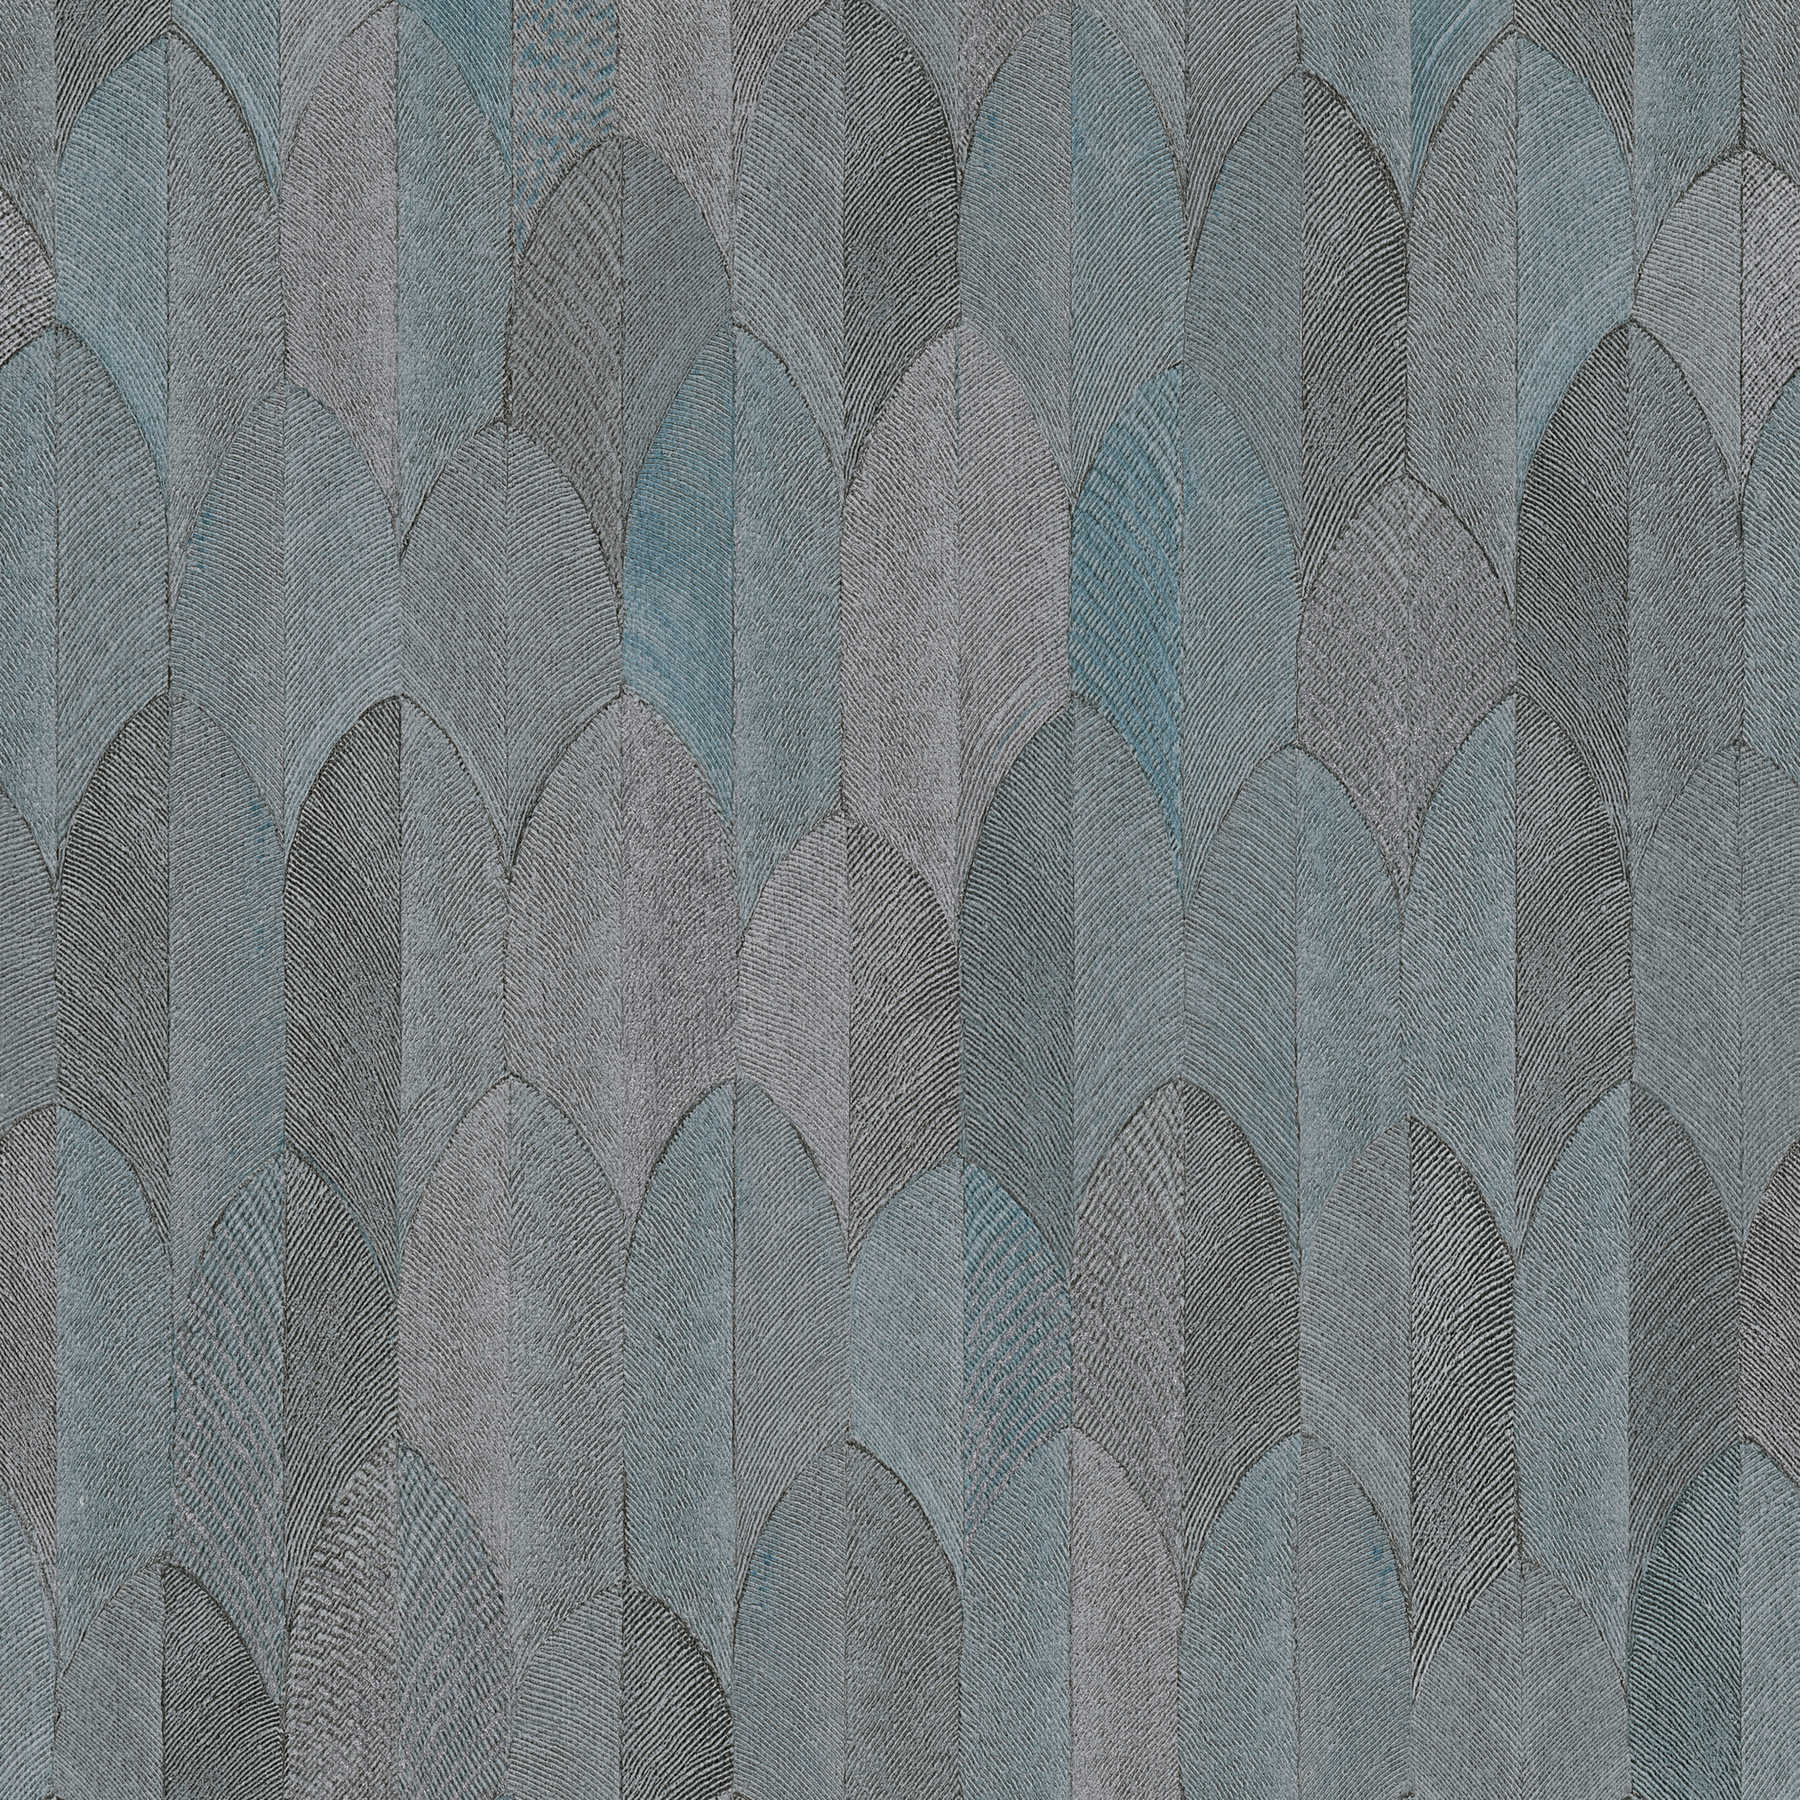 Carta da parati dal design simmetrico con effetto metallizzato - grigio, blu, nero
